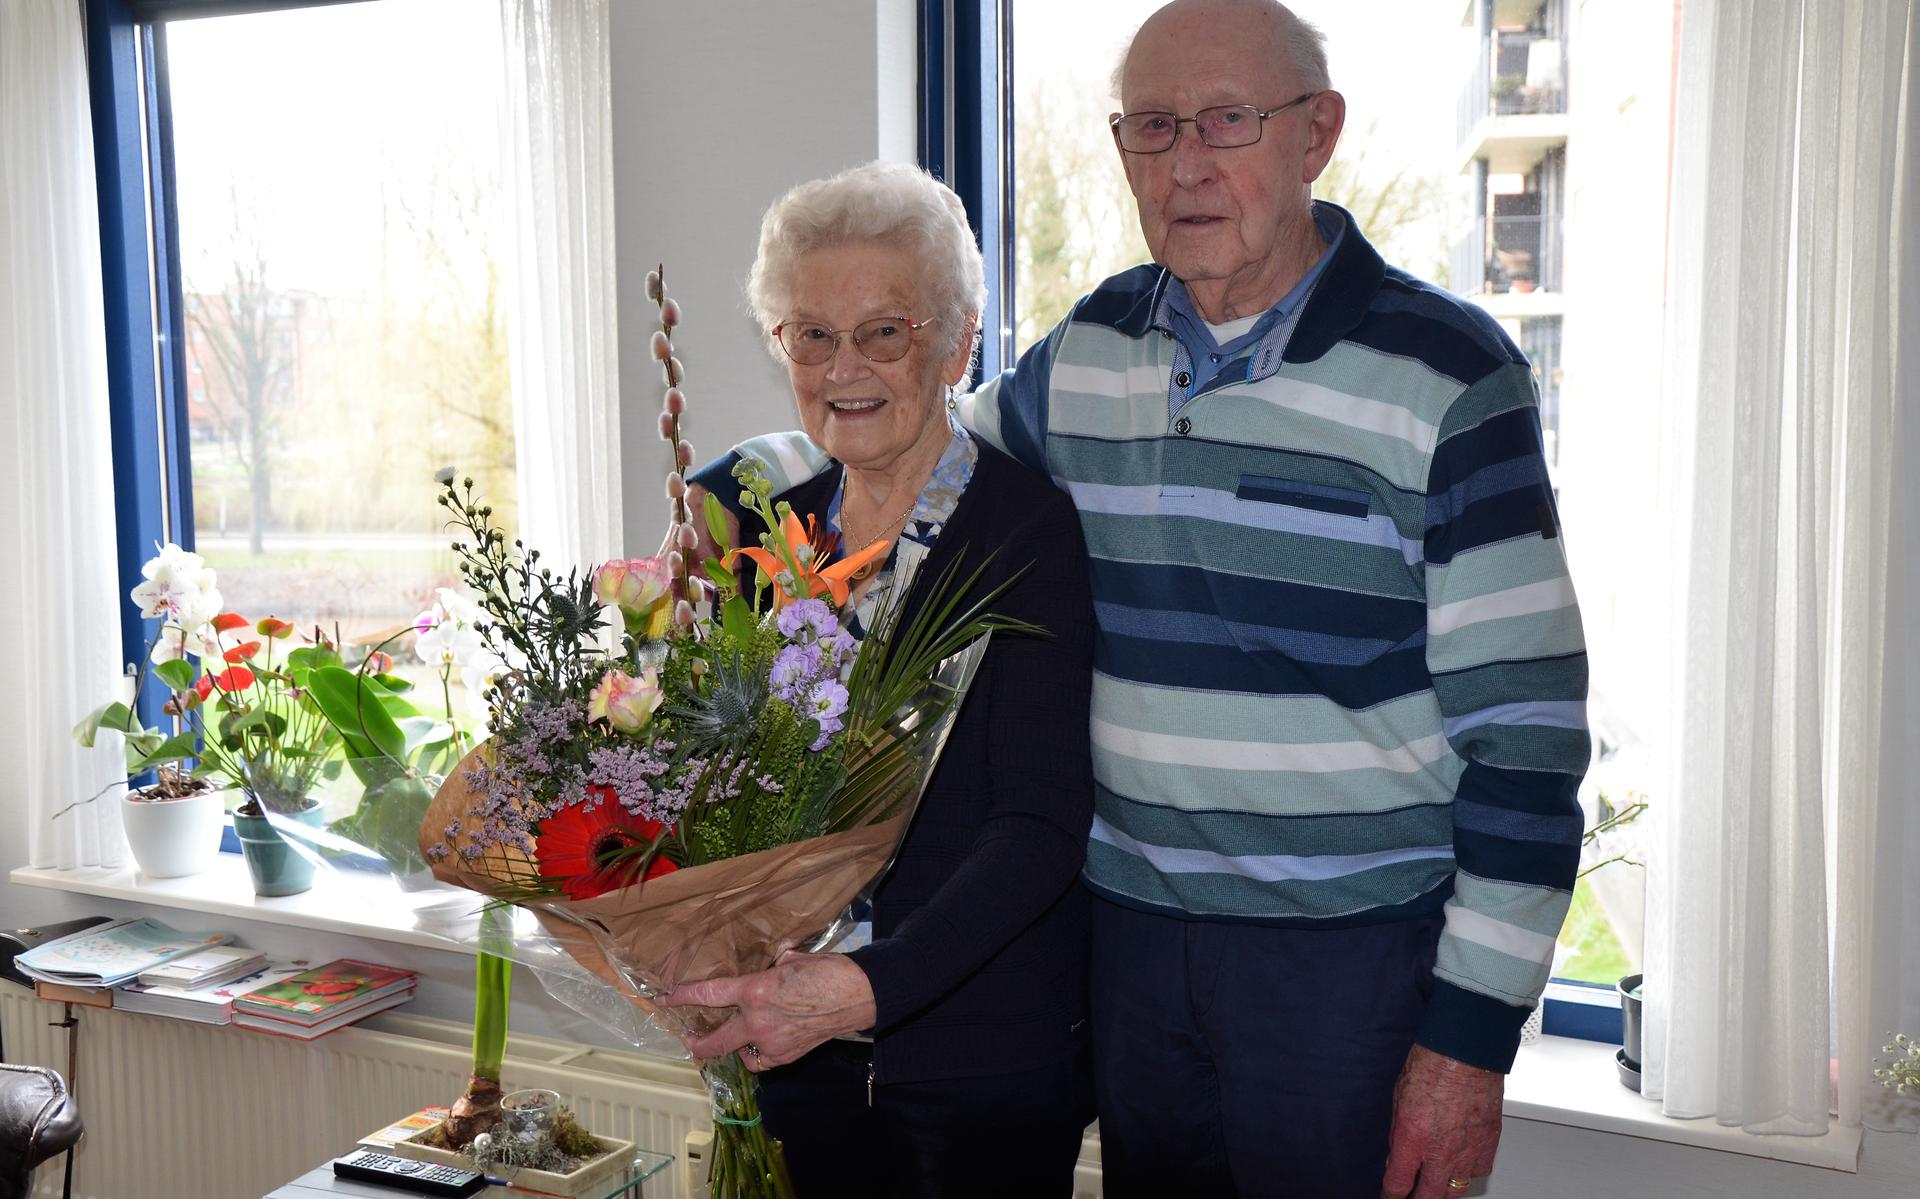 Fenna en Wim Scheper uit Stadskanaal zijn vandaag 65 jaar getrouwd. 